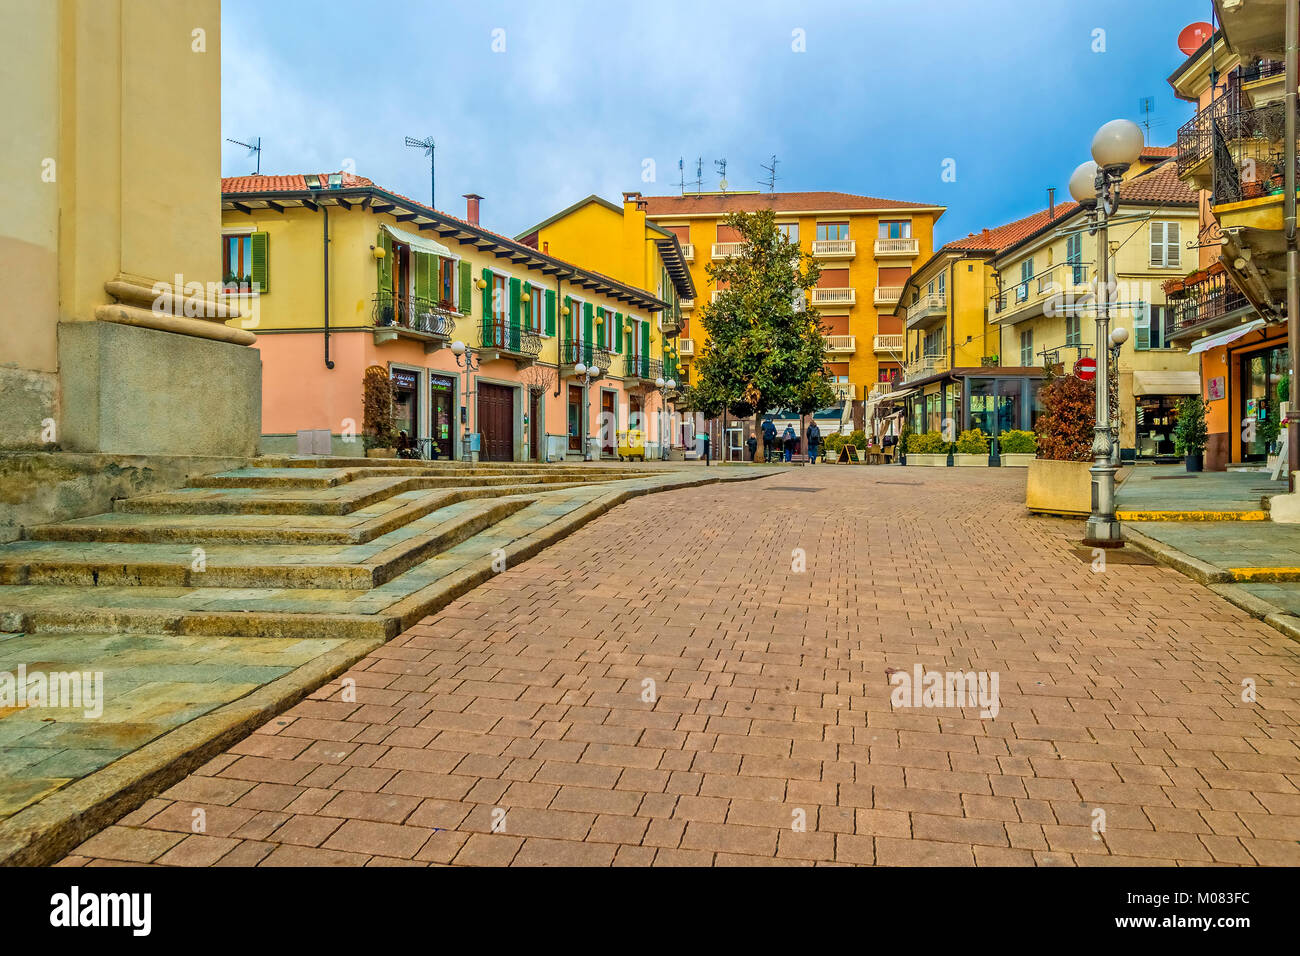 Italia Piemonte Settimo Torinese - Centro storico - Piazza San Pietro in Vincoli Foto Stock